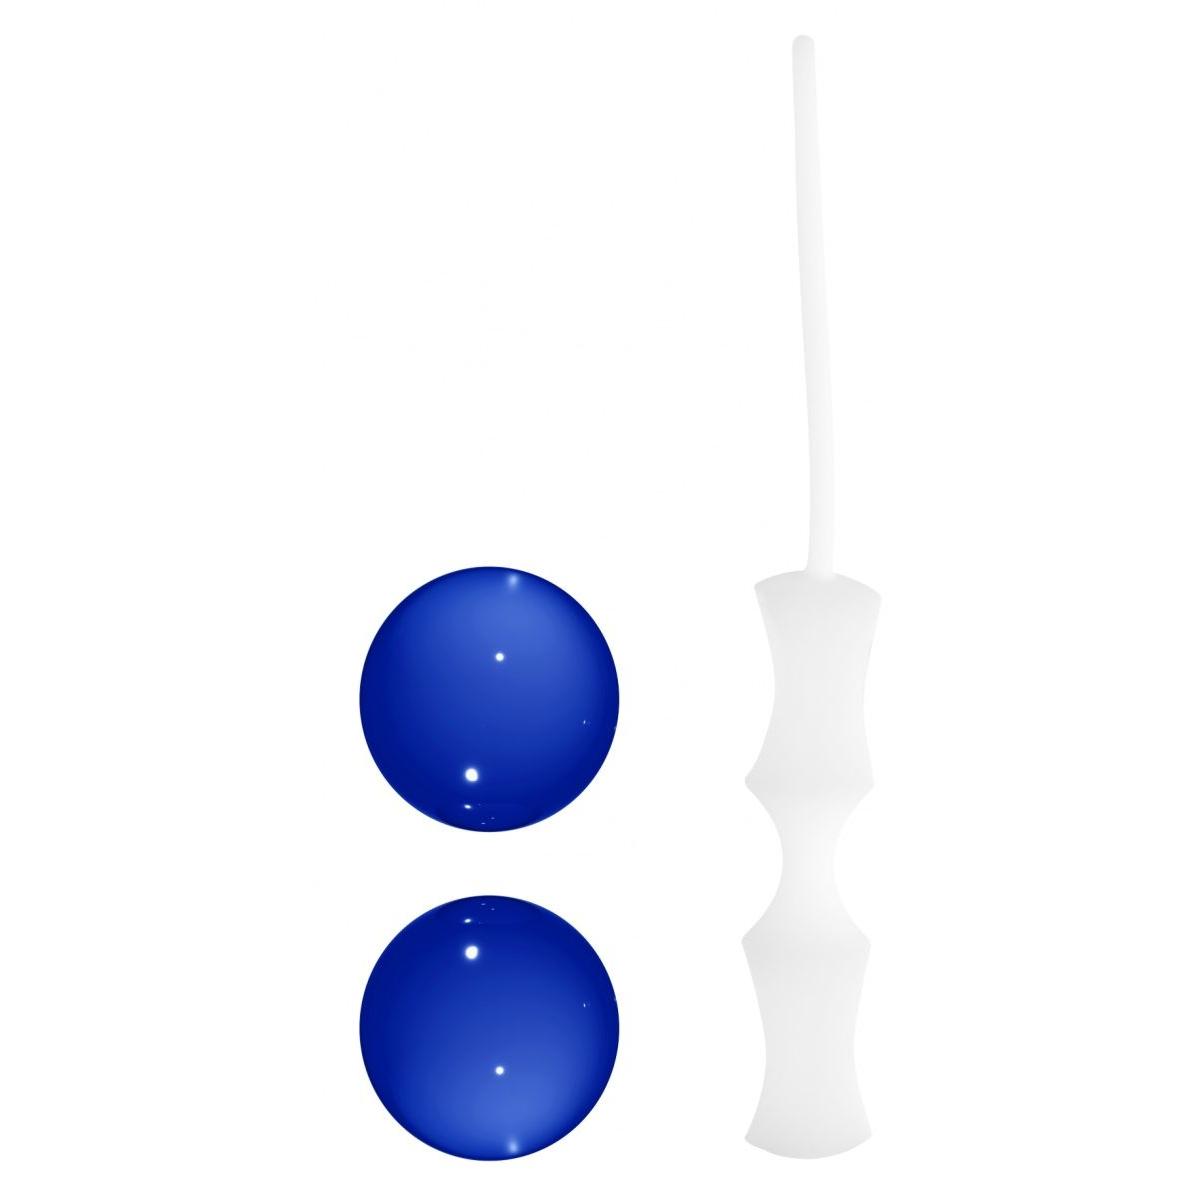 Синие вагинальные шарики Ben Wa Small в белой оболочке